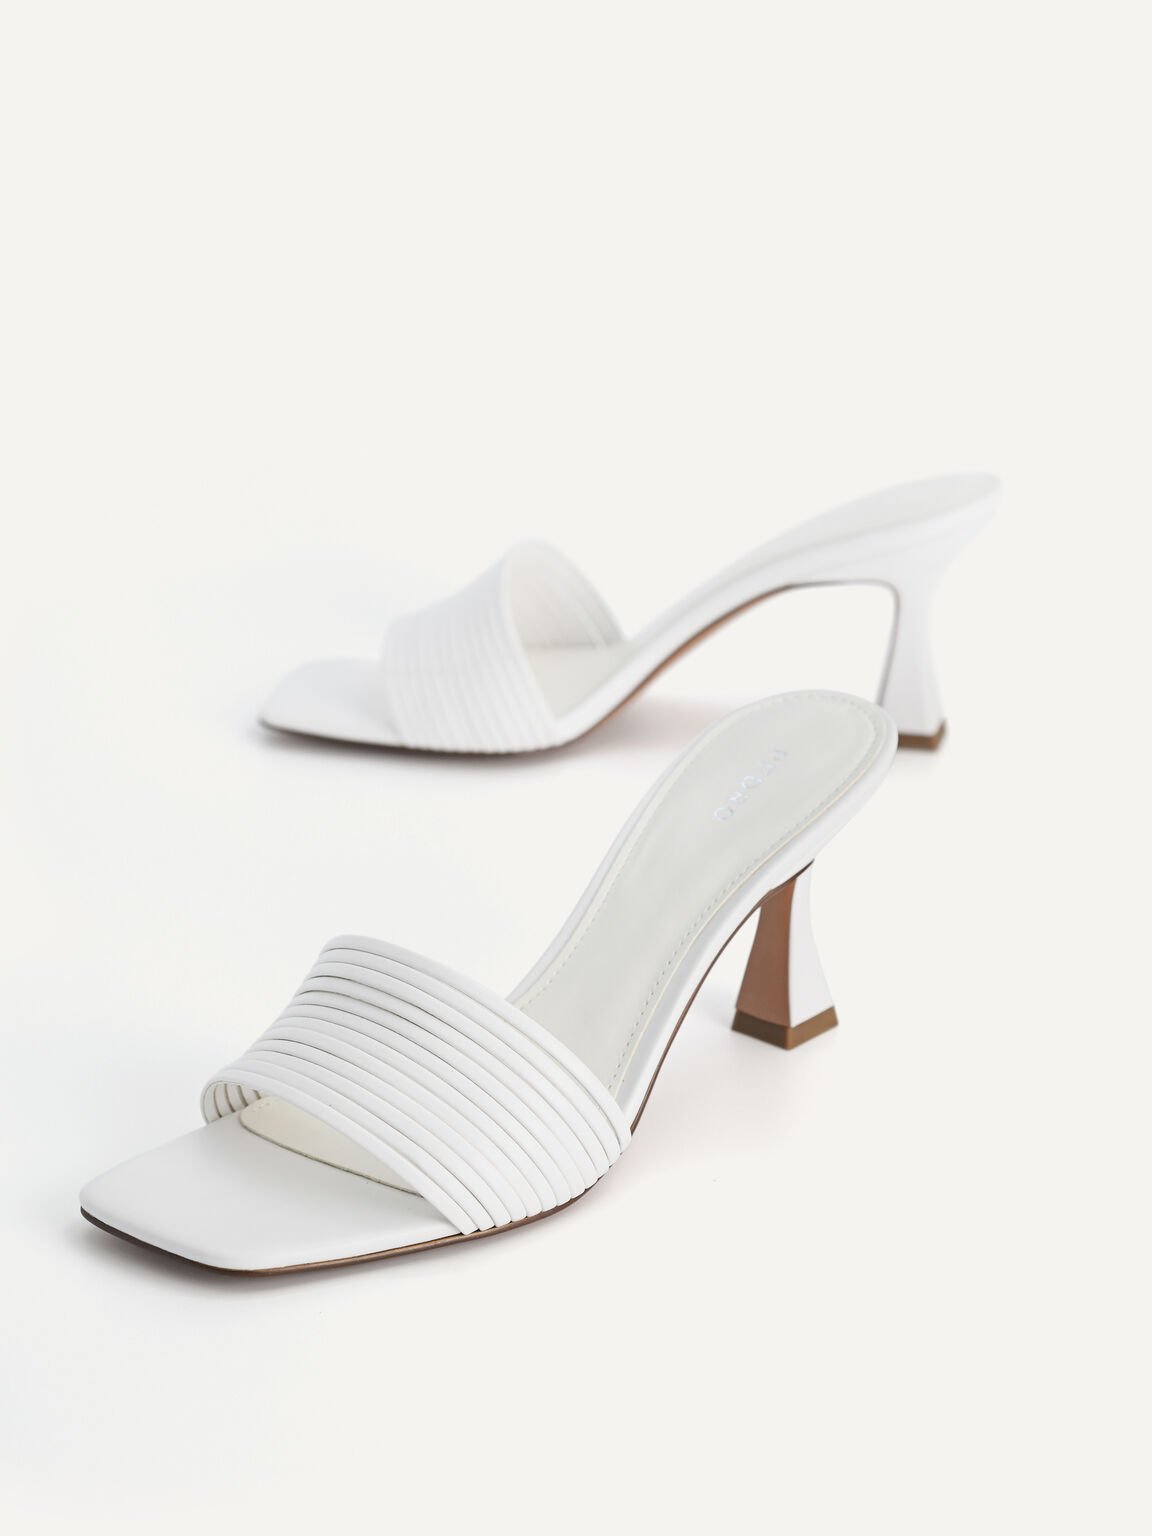 High Heel Sandals, White